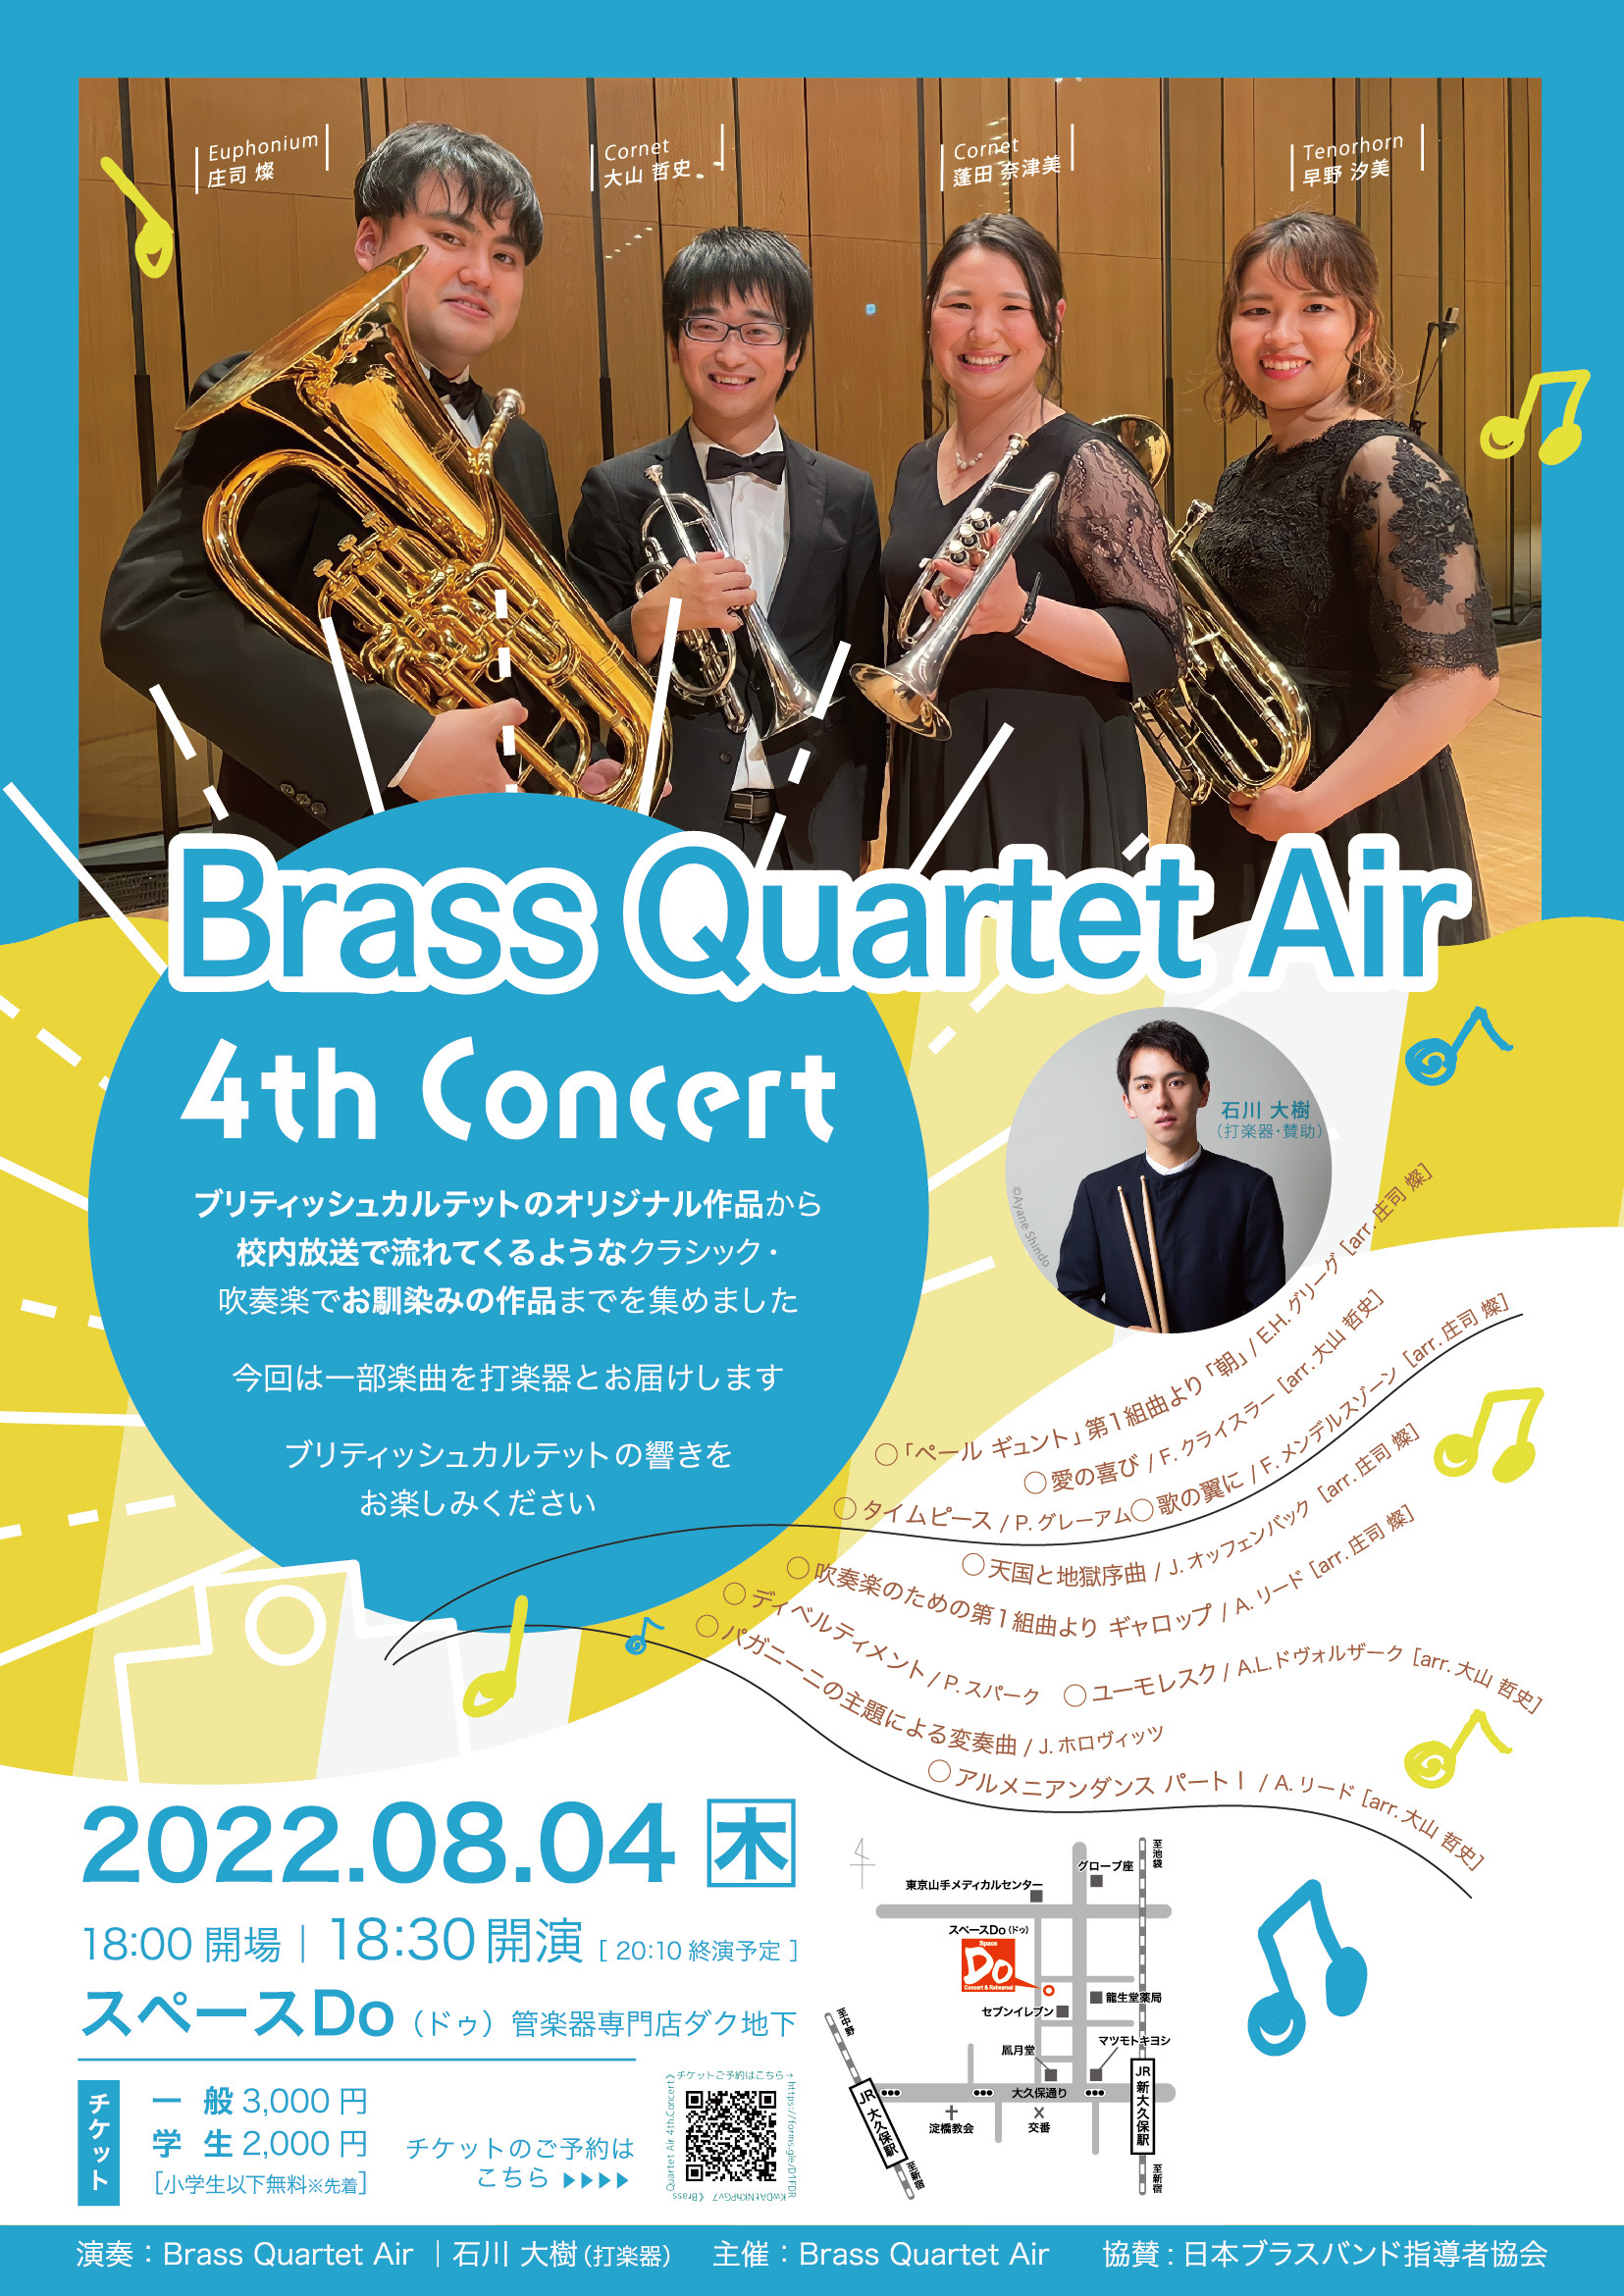 Brass Quartet Air 4th.Concert